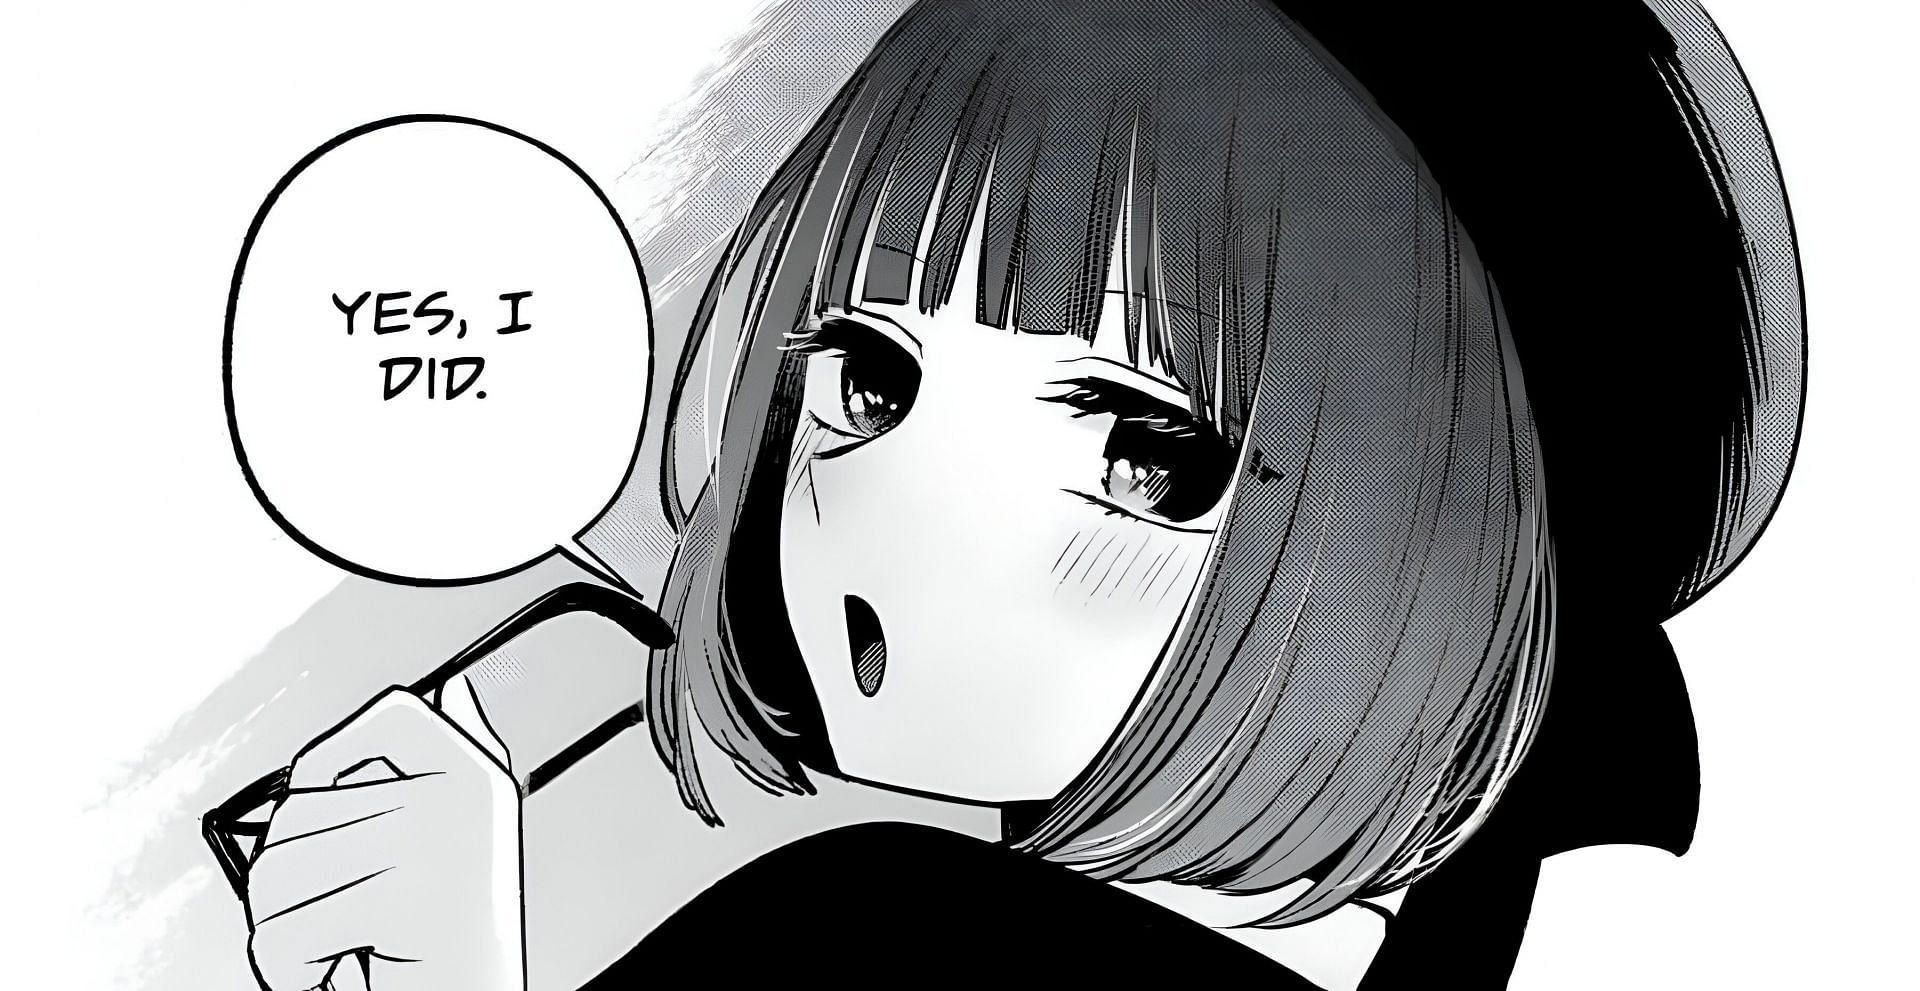 Kana Arima as seen in the manga (Image via Shueisha)